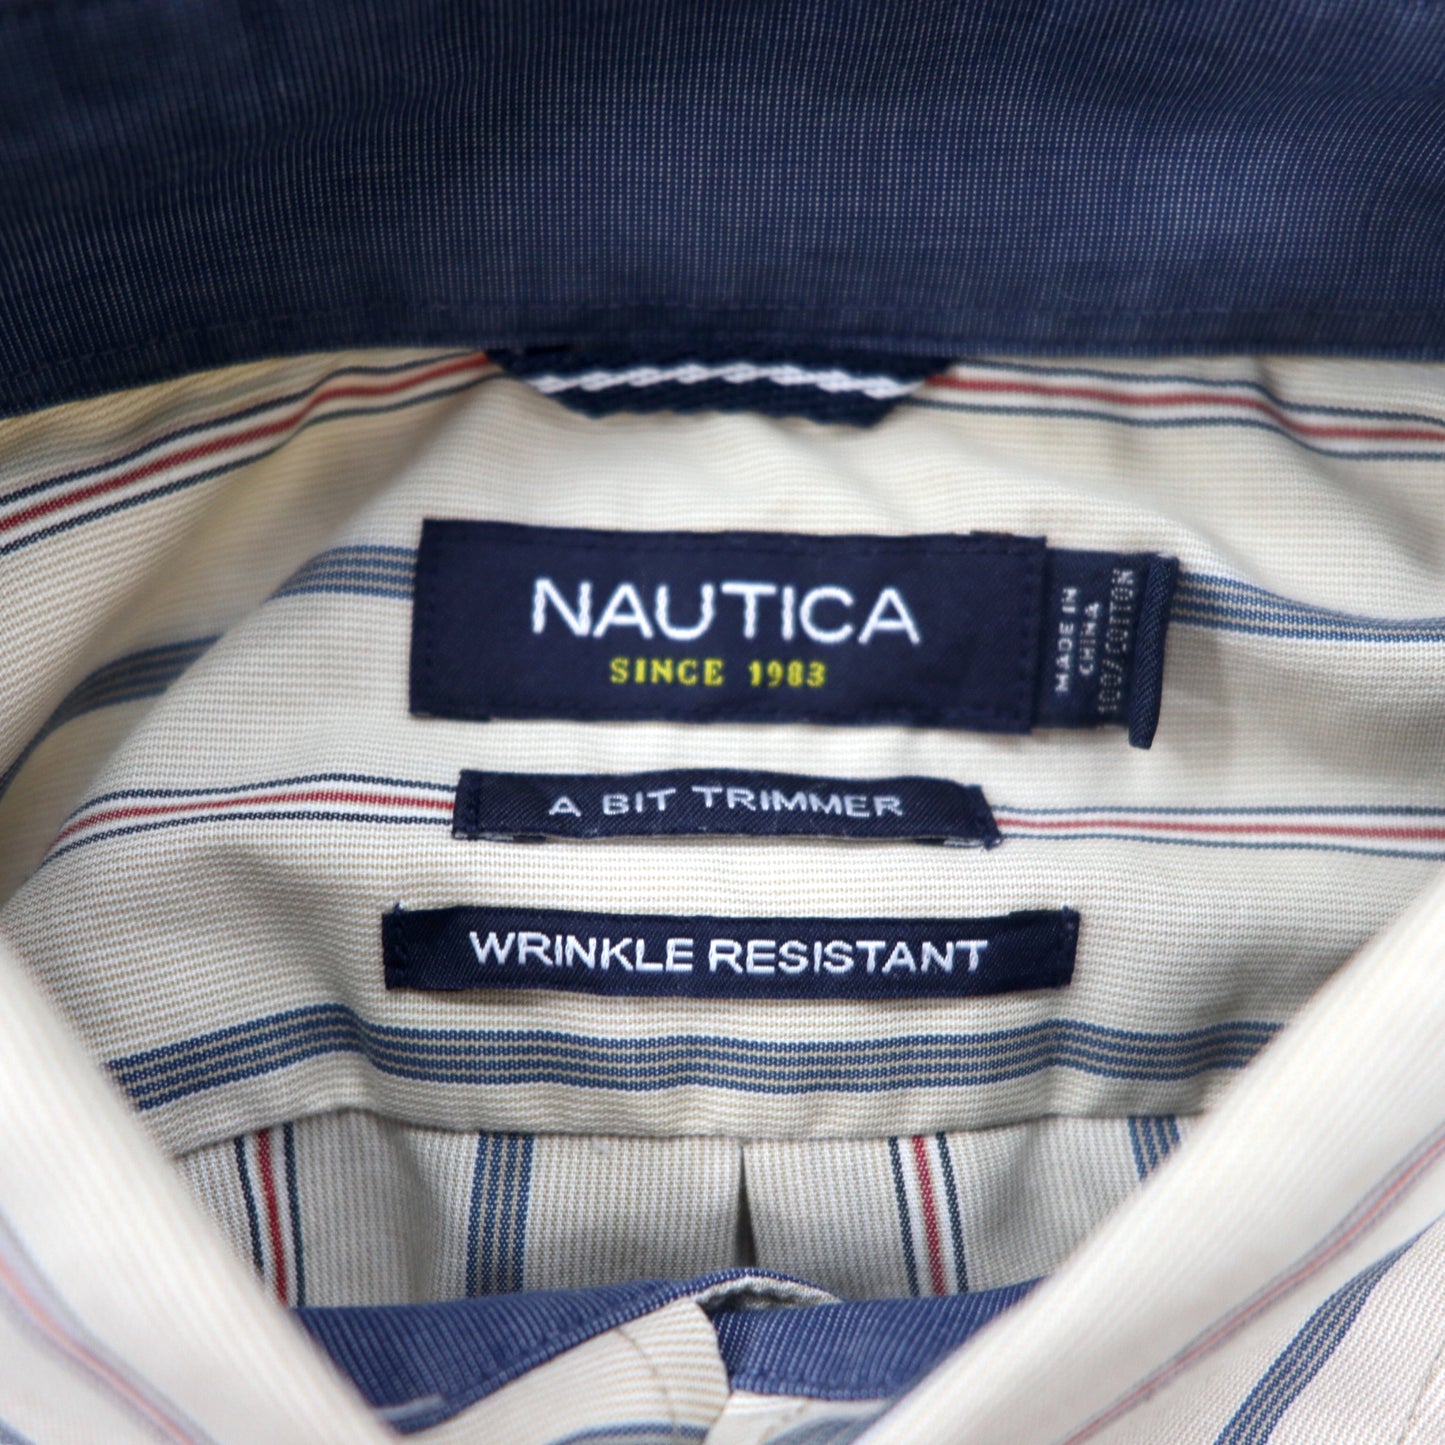 NAUTICA ボタンダウンシャツ L ベージュ ストライプ コットン A BIT TRIMMER ワンポイントロゴ刺繍 WRINKLE RESISTANT